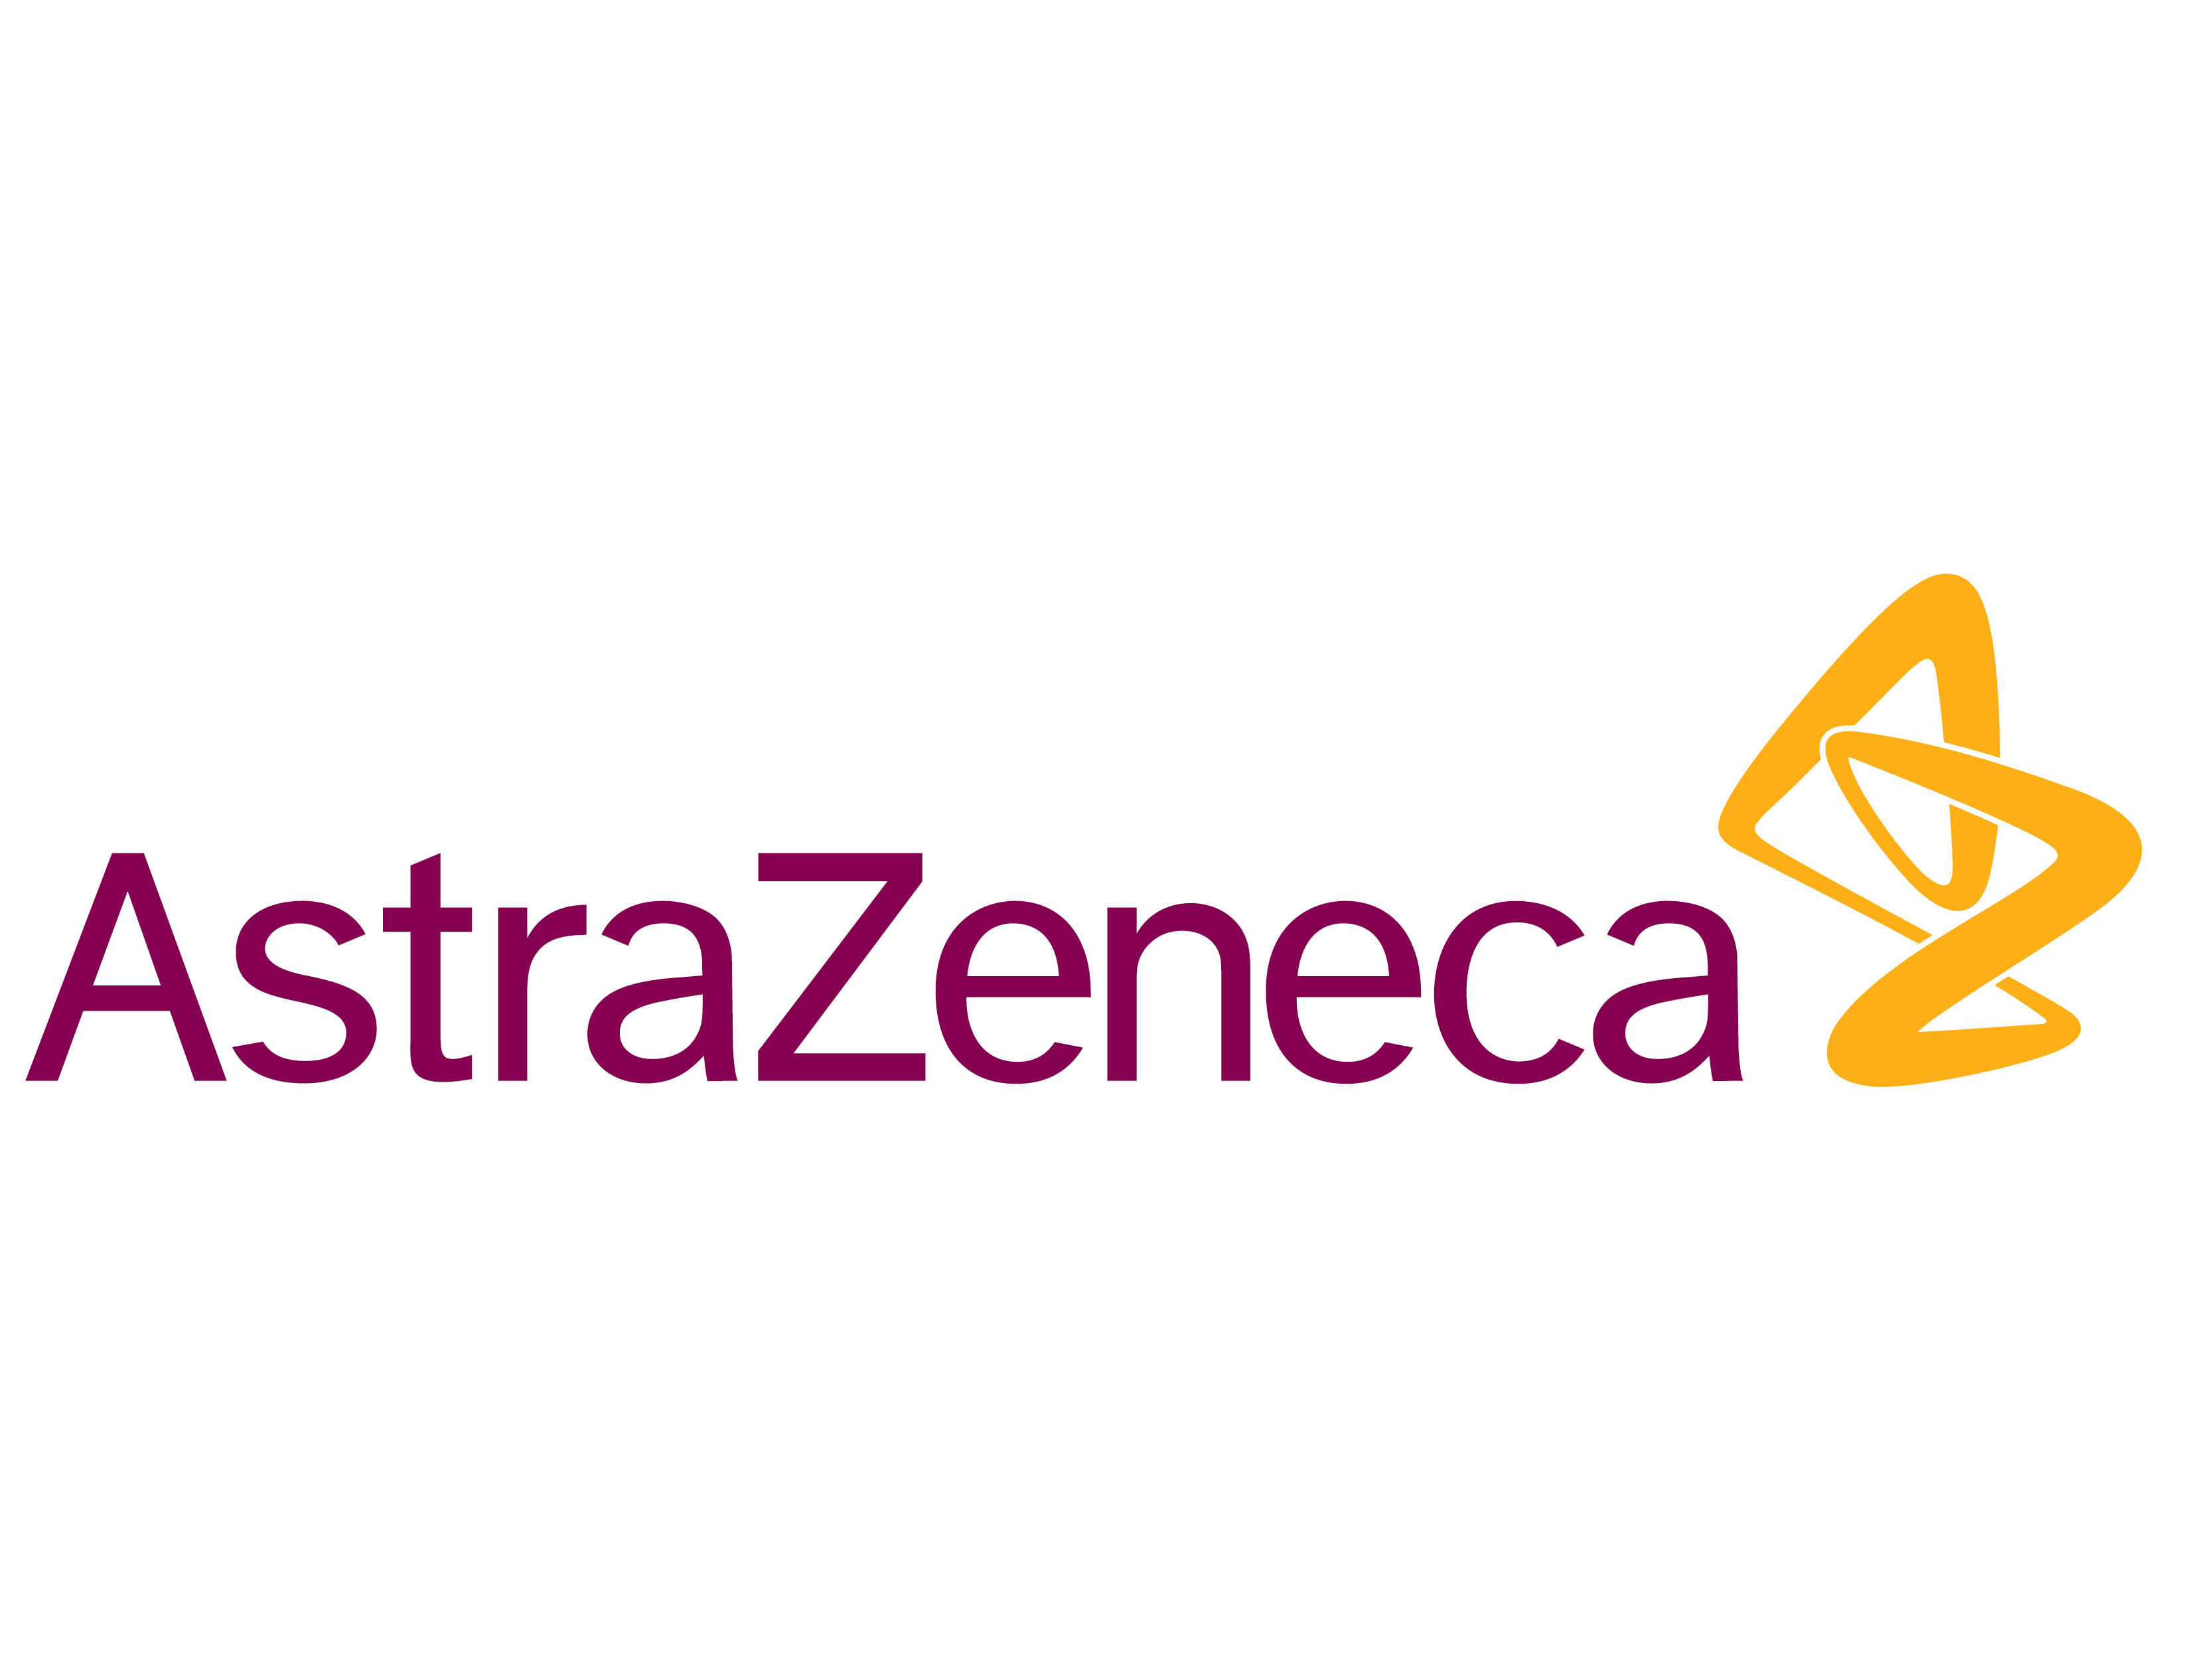 Astra Zeneca